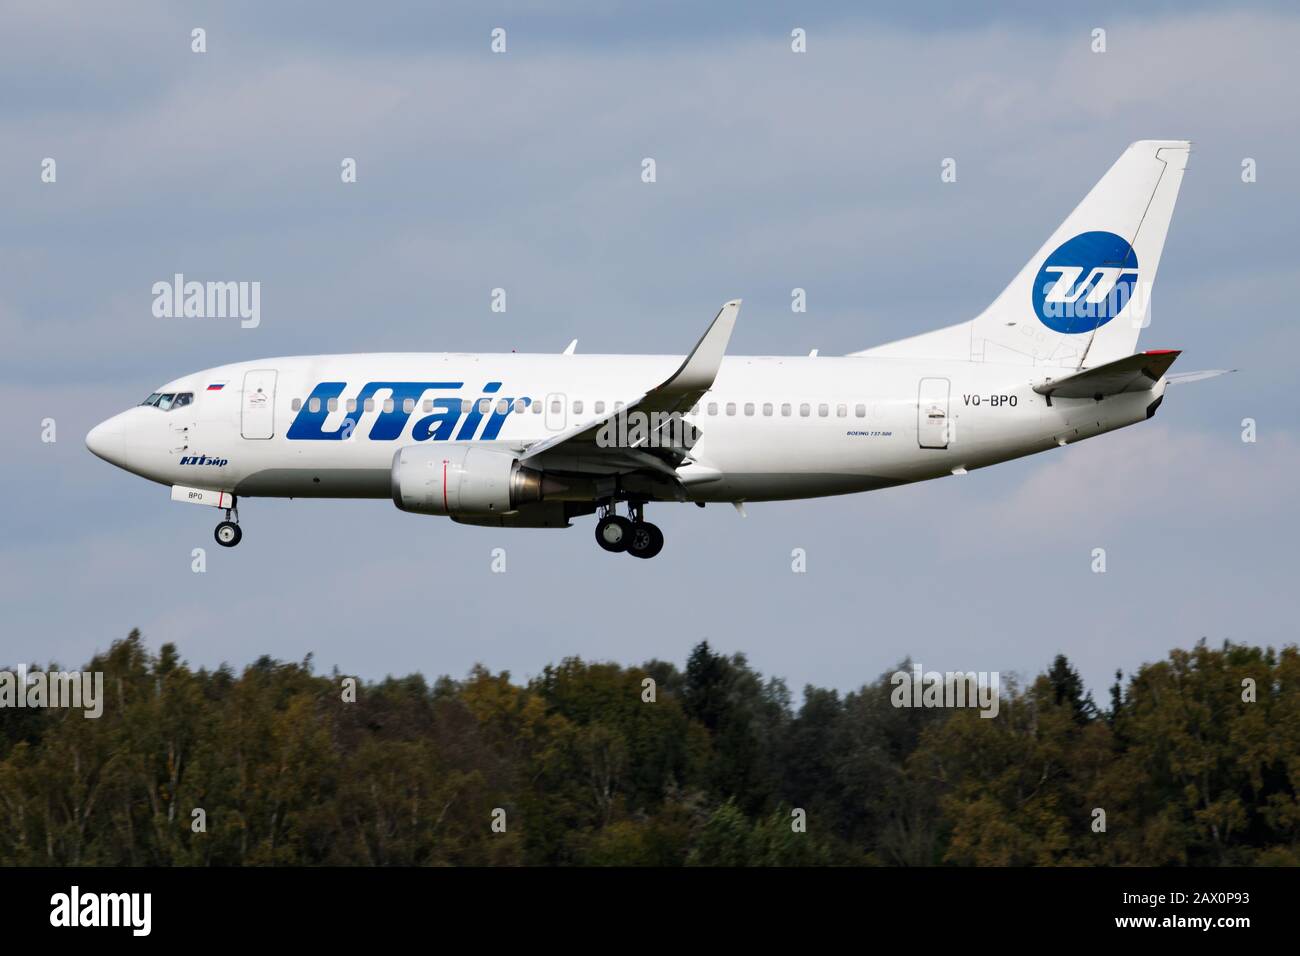 Munich / Allemagne - 10 octobre 2017 : Boeing 737-500 VQ-BPO UTAir arrivée et atterrissage de l'avion de passagers à l'aéroport de Munich Banque D'Images